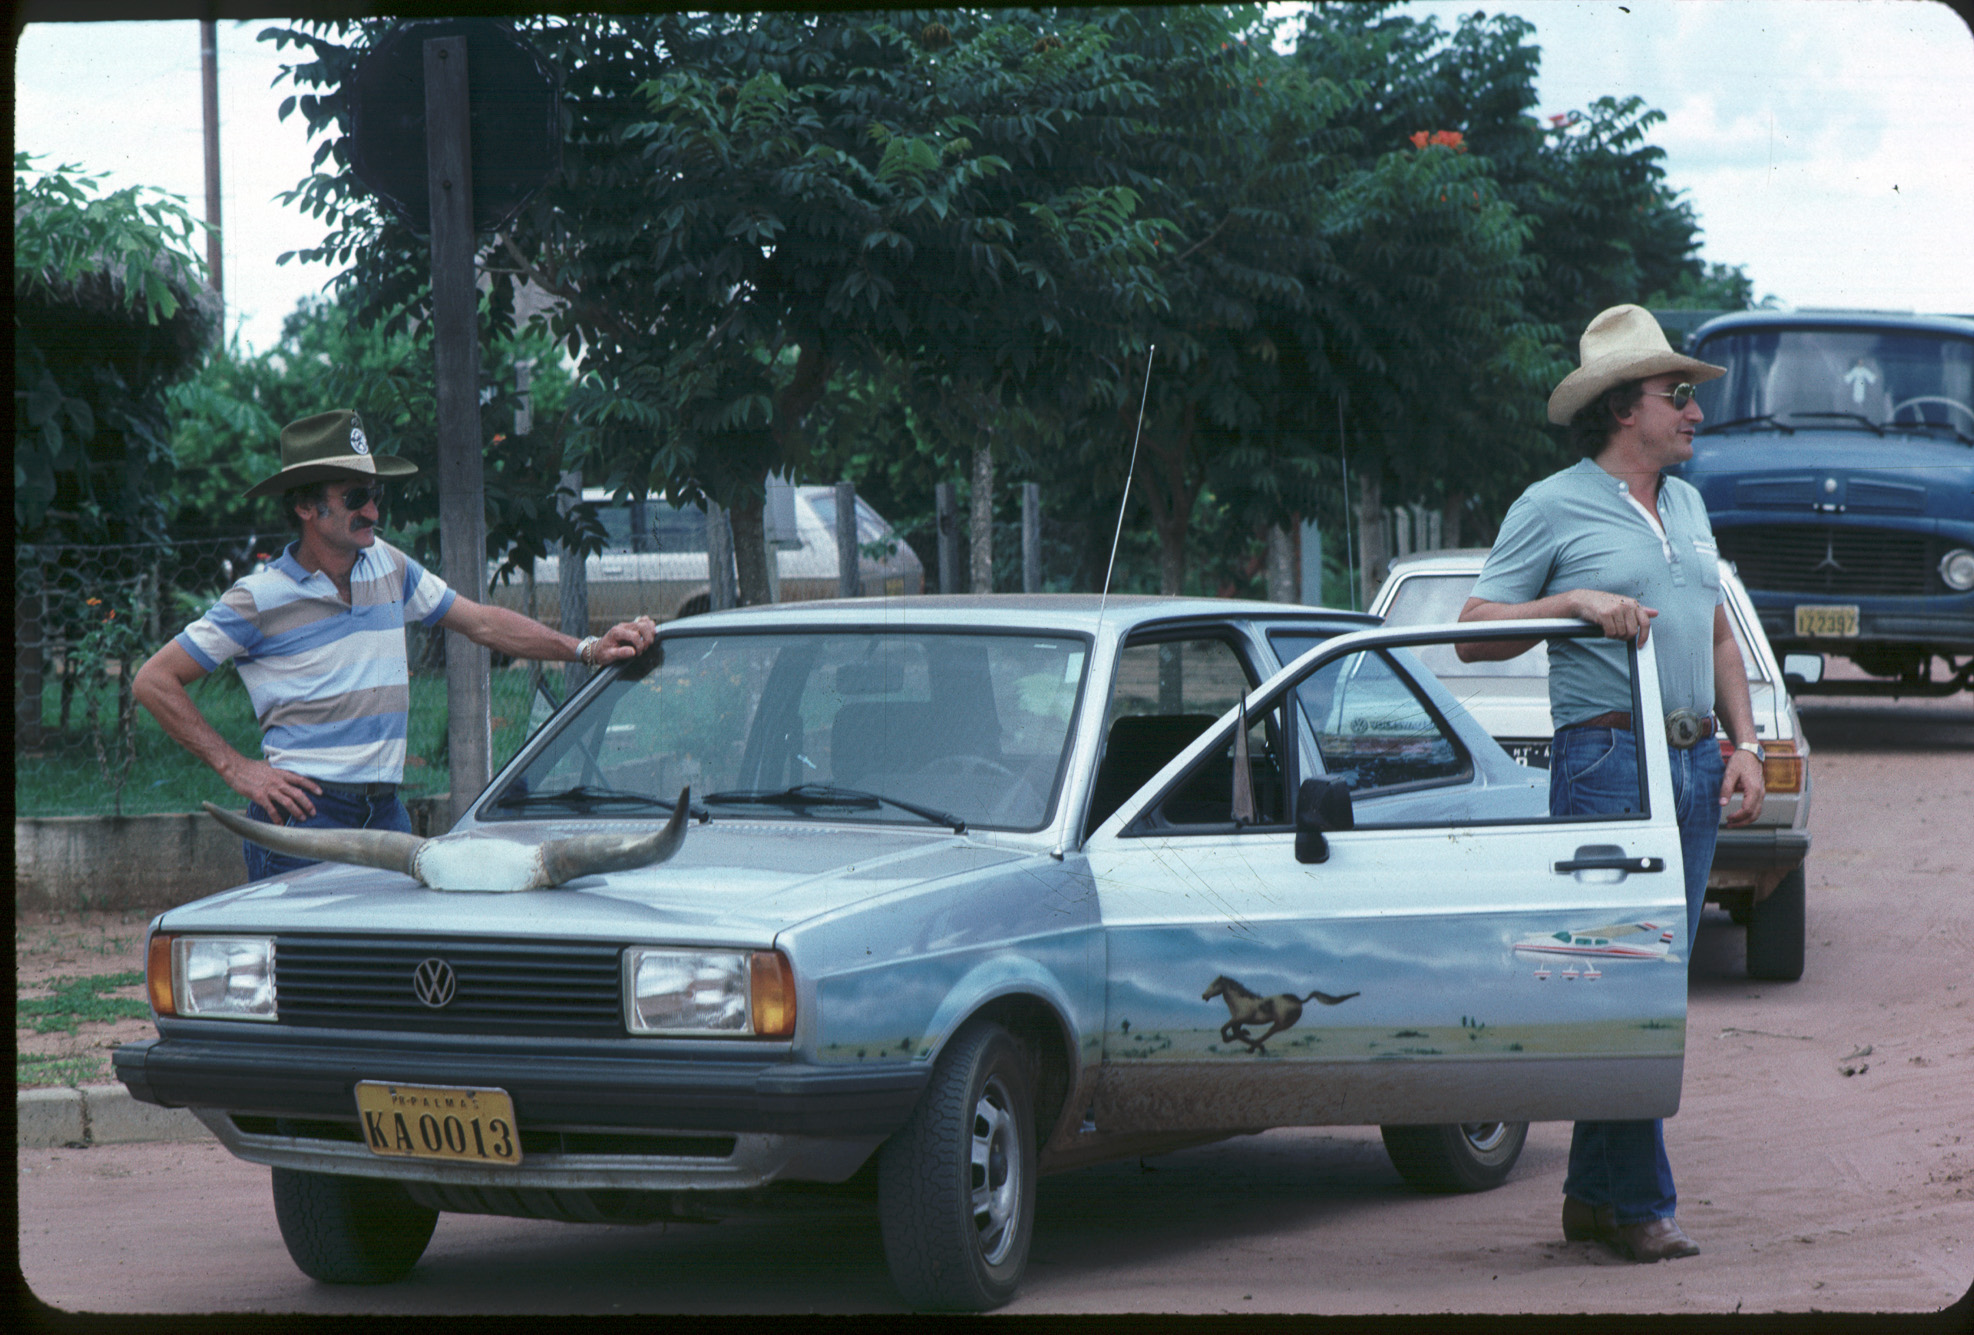 Agua Boa. Les agriculteurs locaux affichent leur goût en matière de "tuning" automobile.